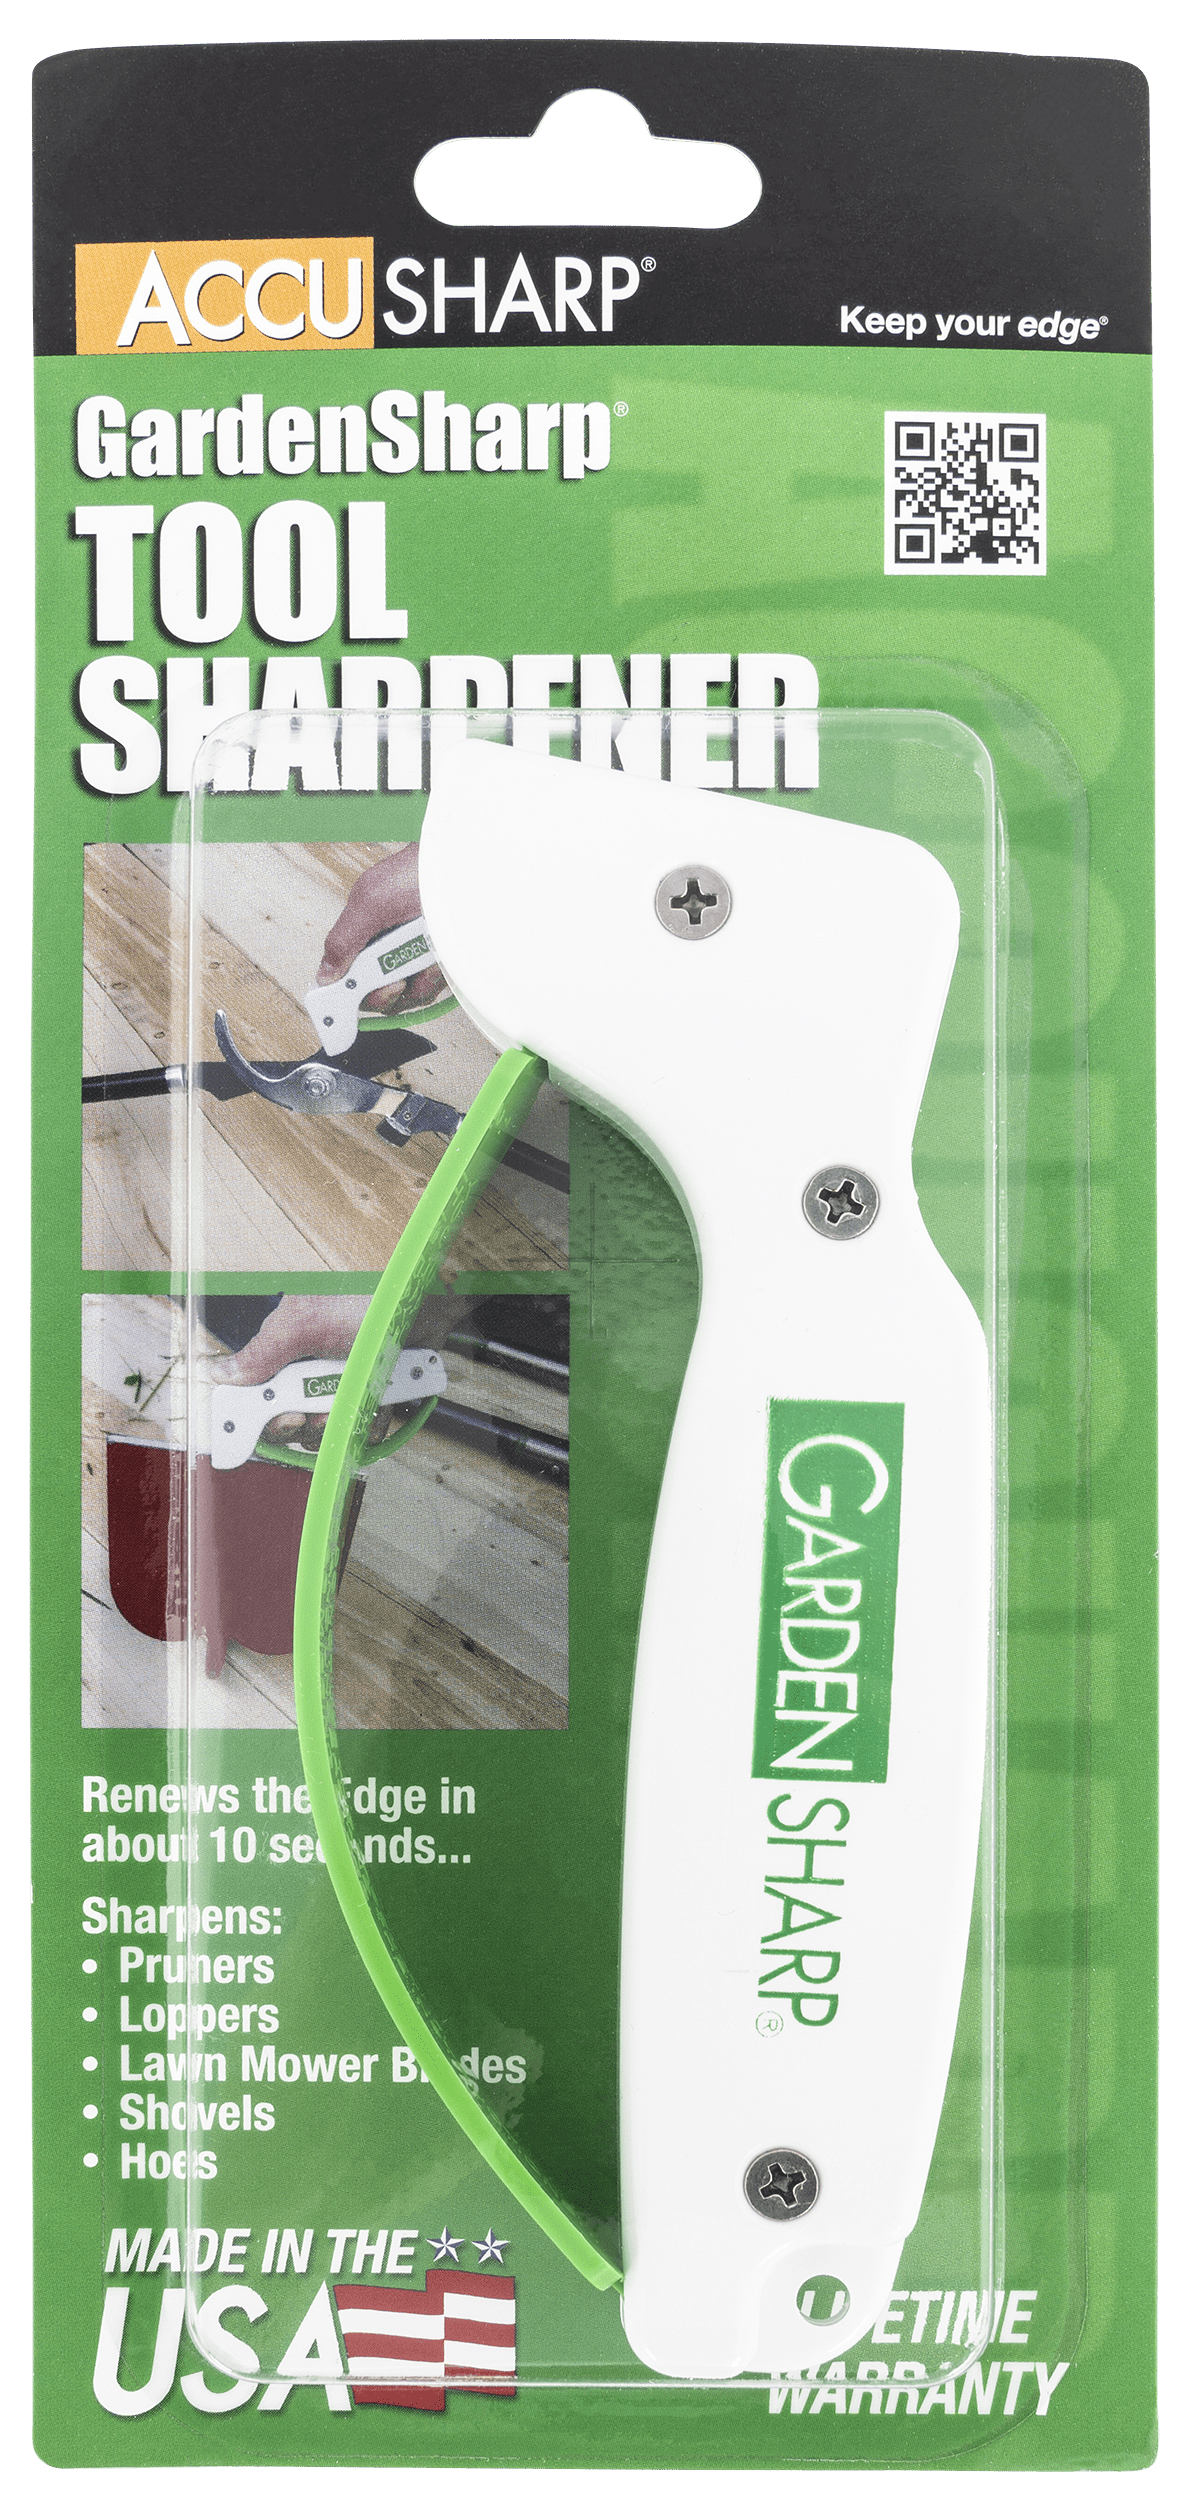 Accusharp Accusharp Gardensharp, Fpi 006c  Gardensharp Tool Sharpener Accessories